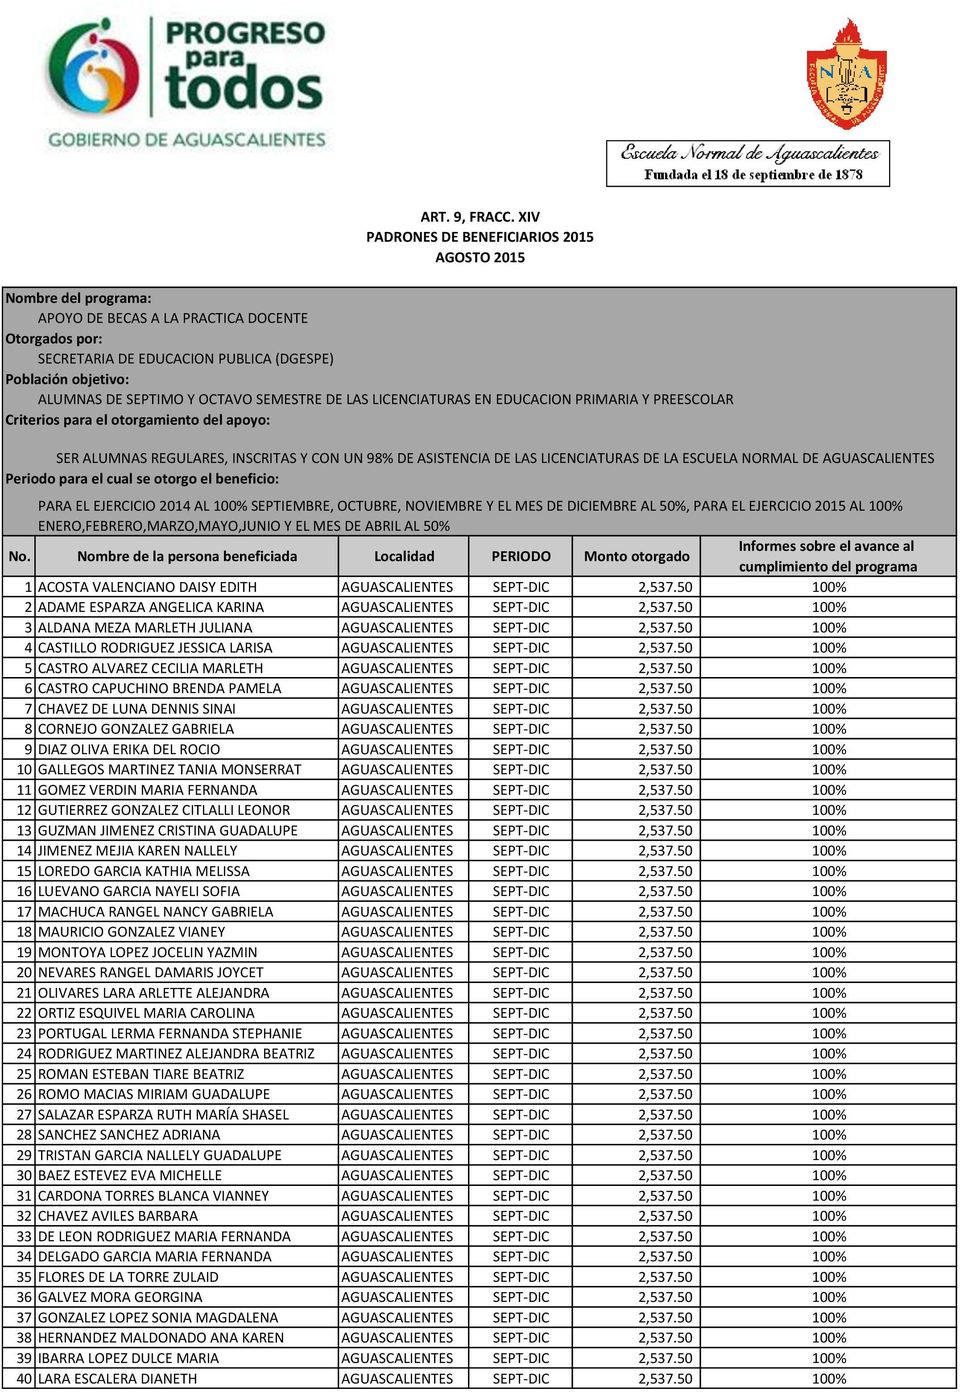 50 100% 6 CASTRO CAPUCHINO BRENDA PAMELA AGUASCALIENTES SEPT-DIC 2,537.50 100% 7 CHAVEZ DE LUNA DENNIS SINAI AGUASCALIENTES SEPT-DIC 2,537.